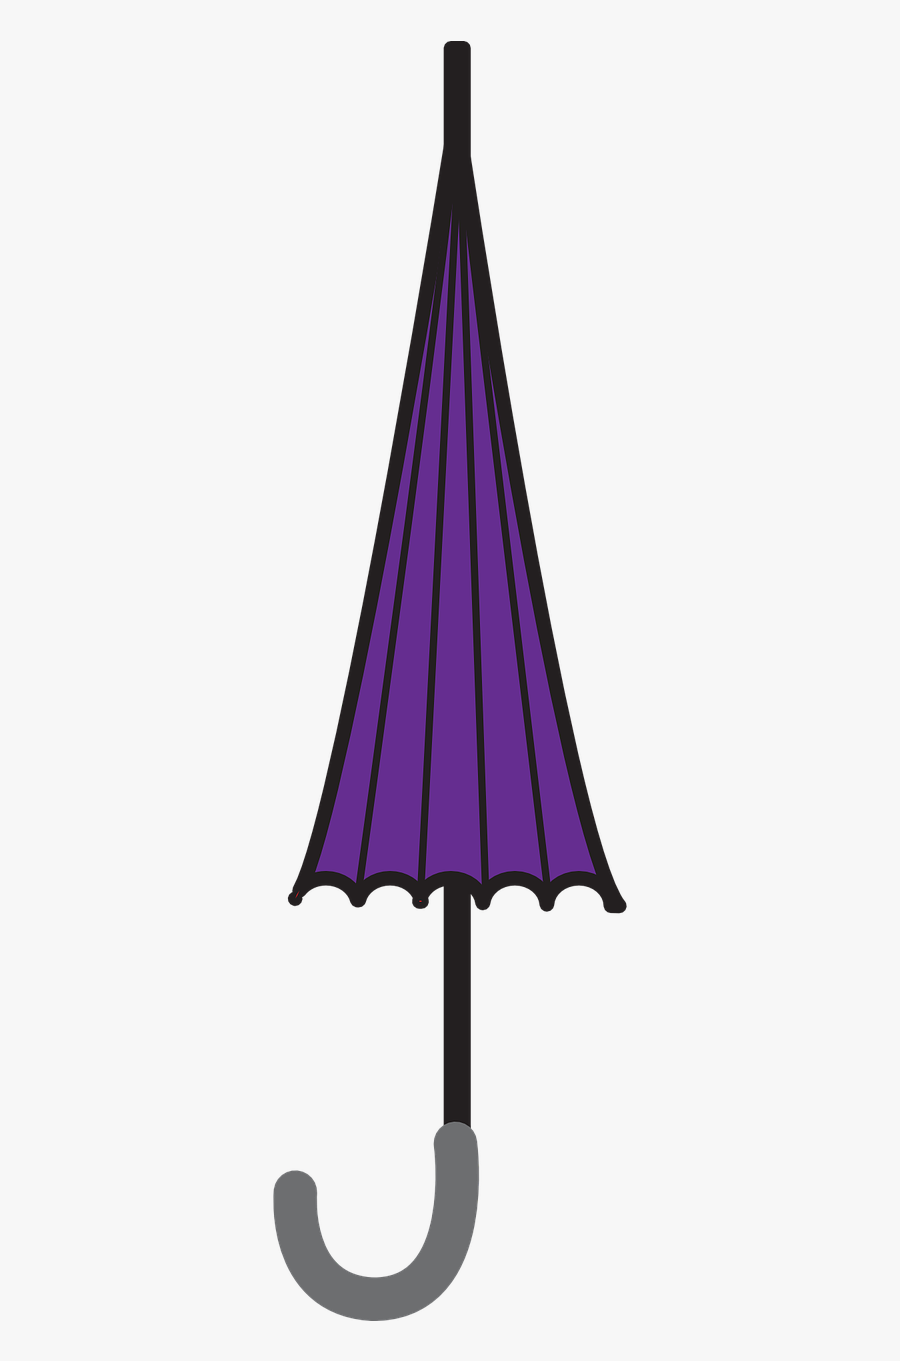 Clipart Umbrella Purple Umbrella - Umbrella Clip Art Closed, Transparent Clipart